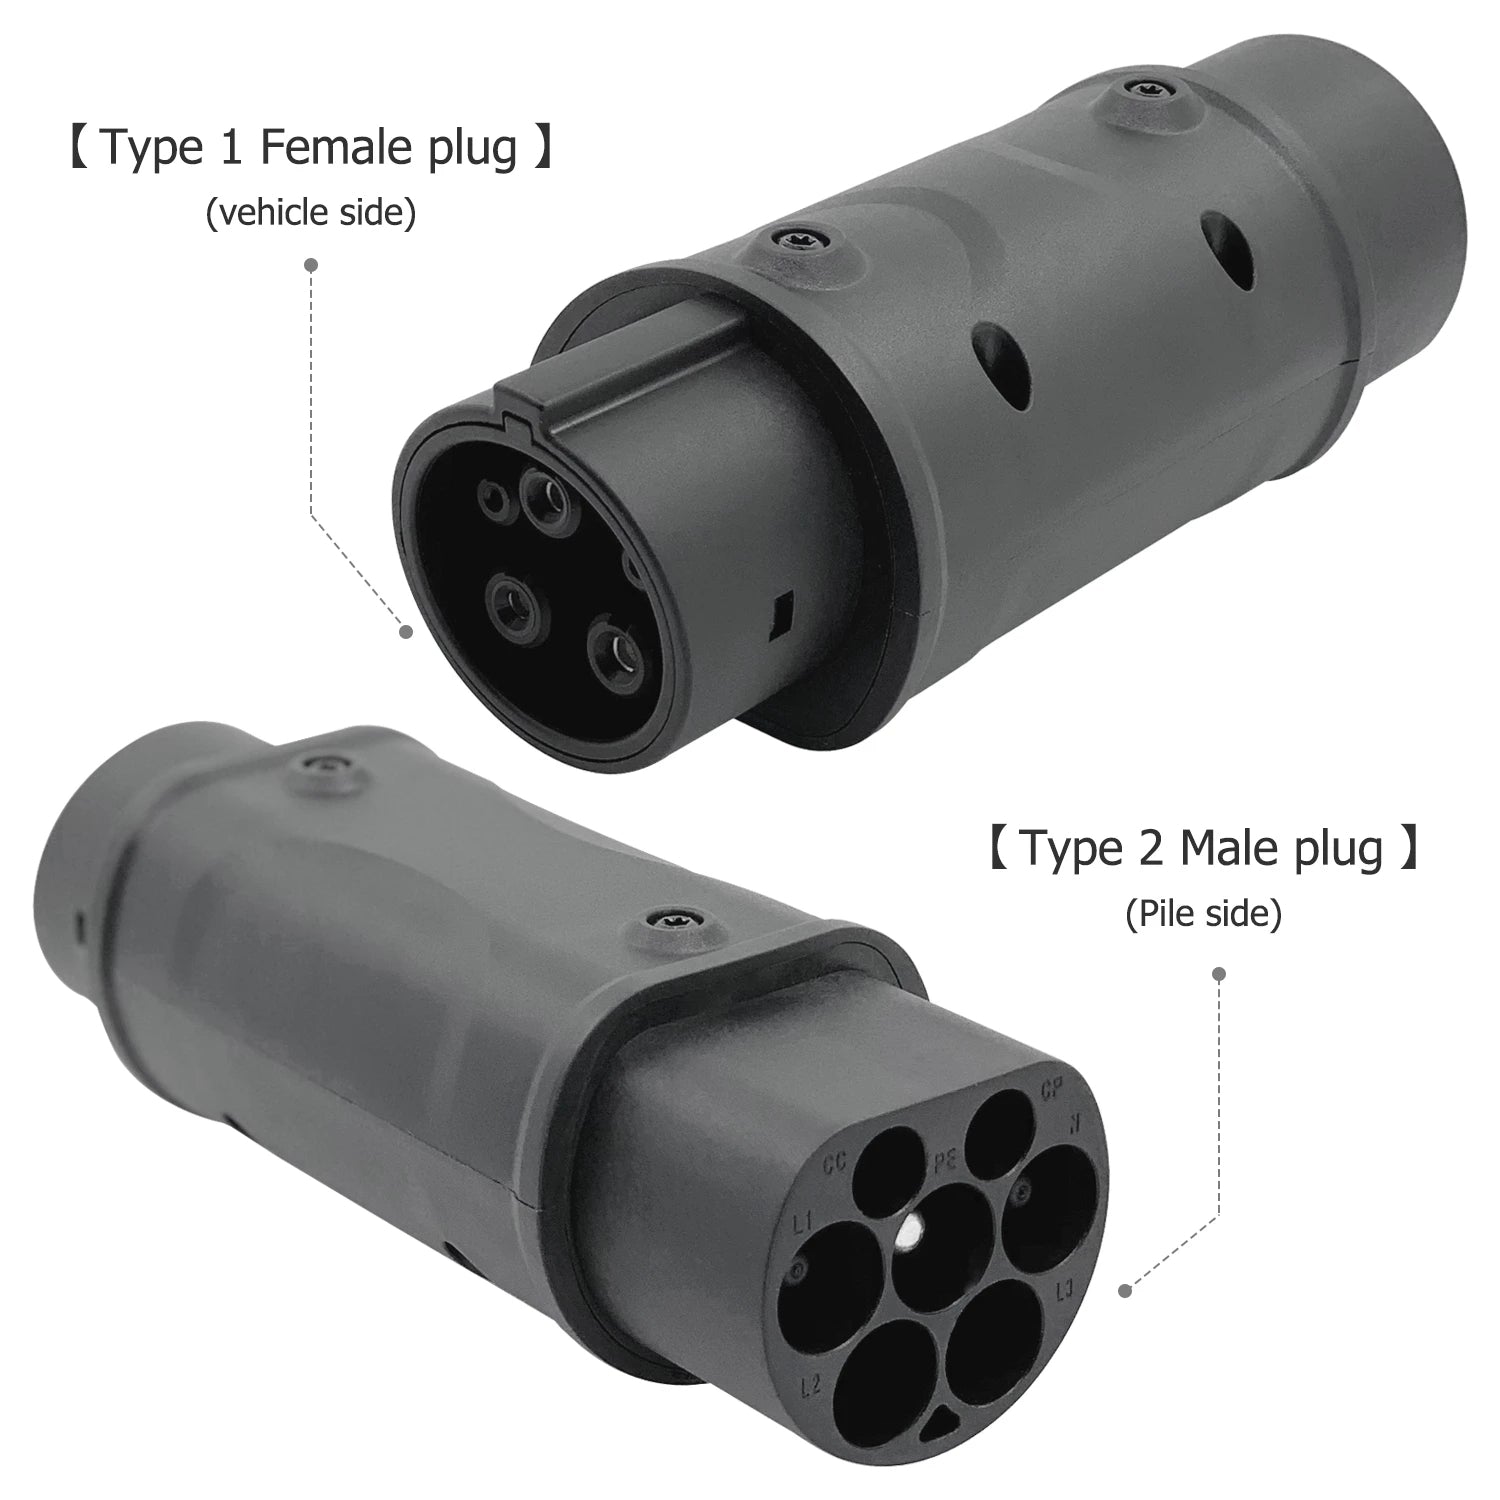 T1 vrouwelijk (auto) naar T2 mannelijk (kabel) compacte adapter